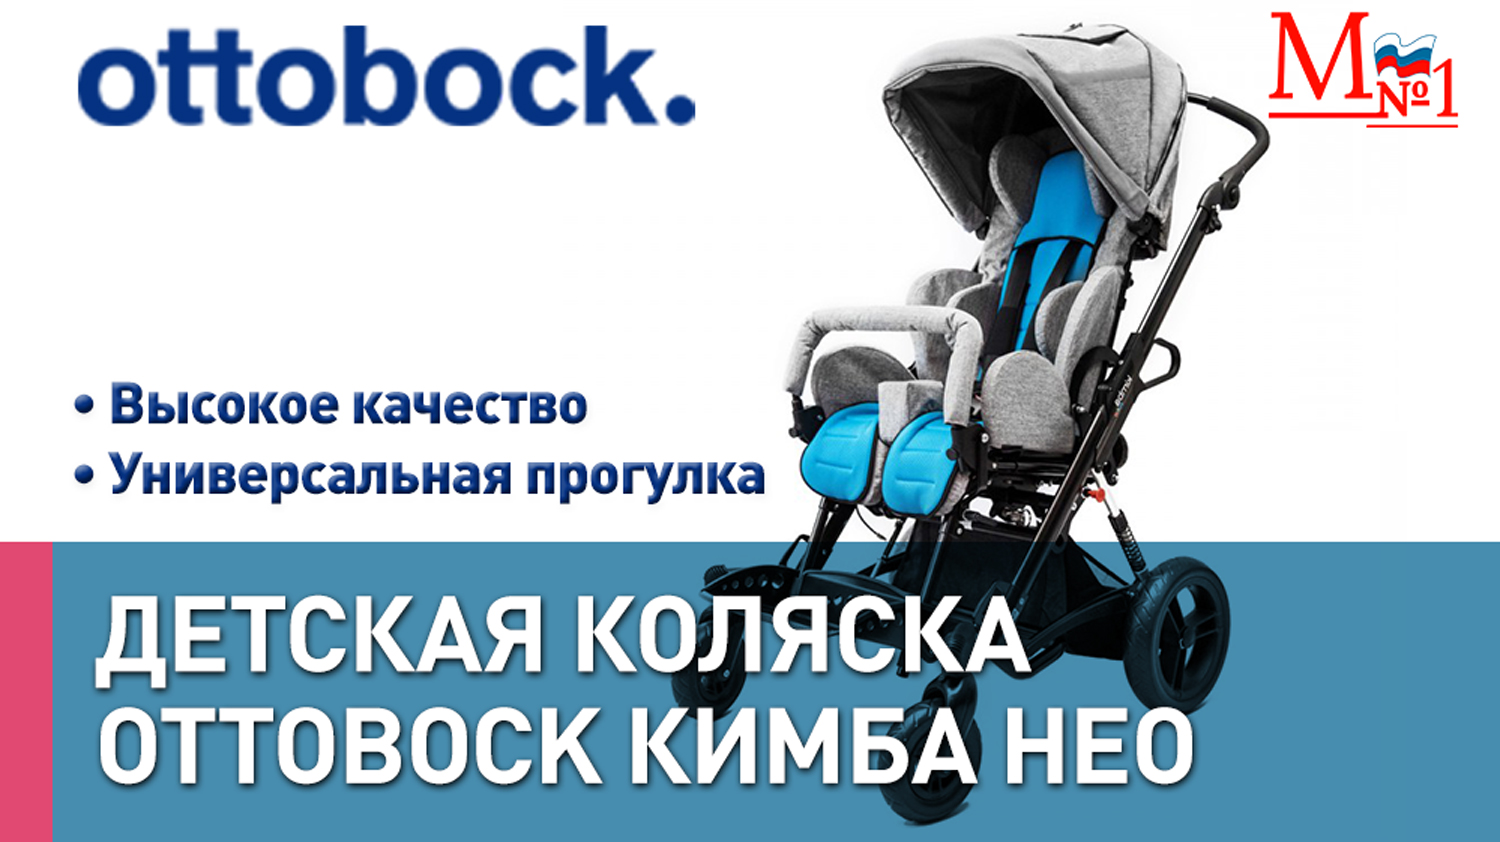 Оттобок Кимба Нео. РАСПАКОВКА! Детская инвалидная прогулочная коляска. Для детей с ДЦП.